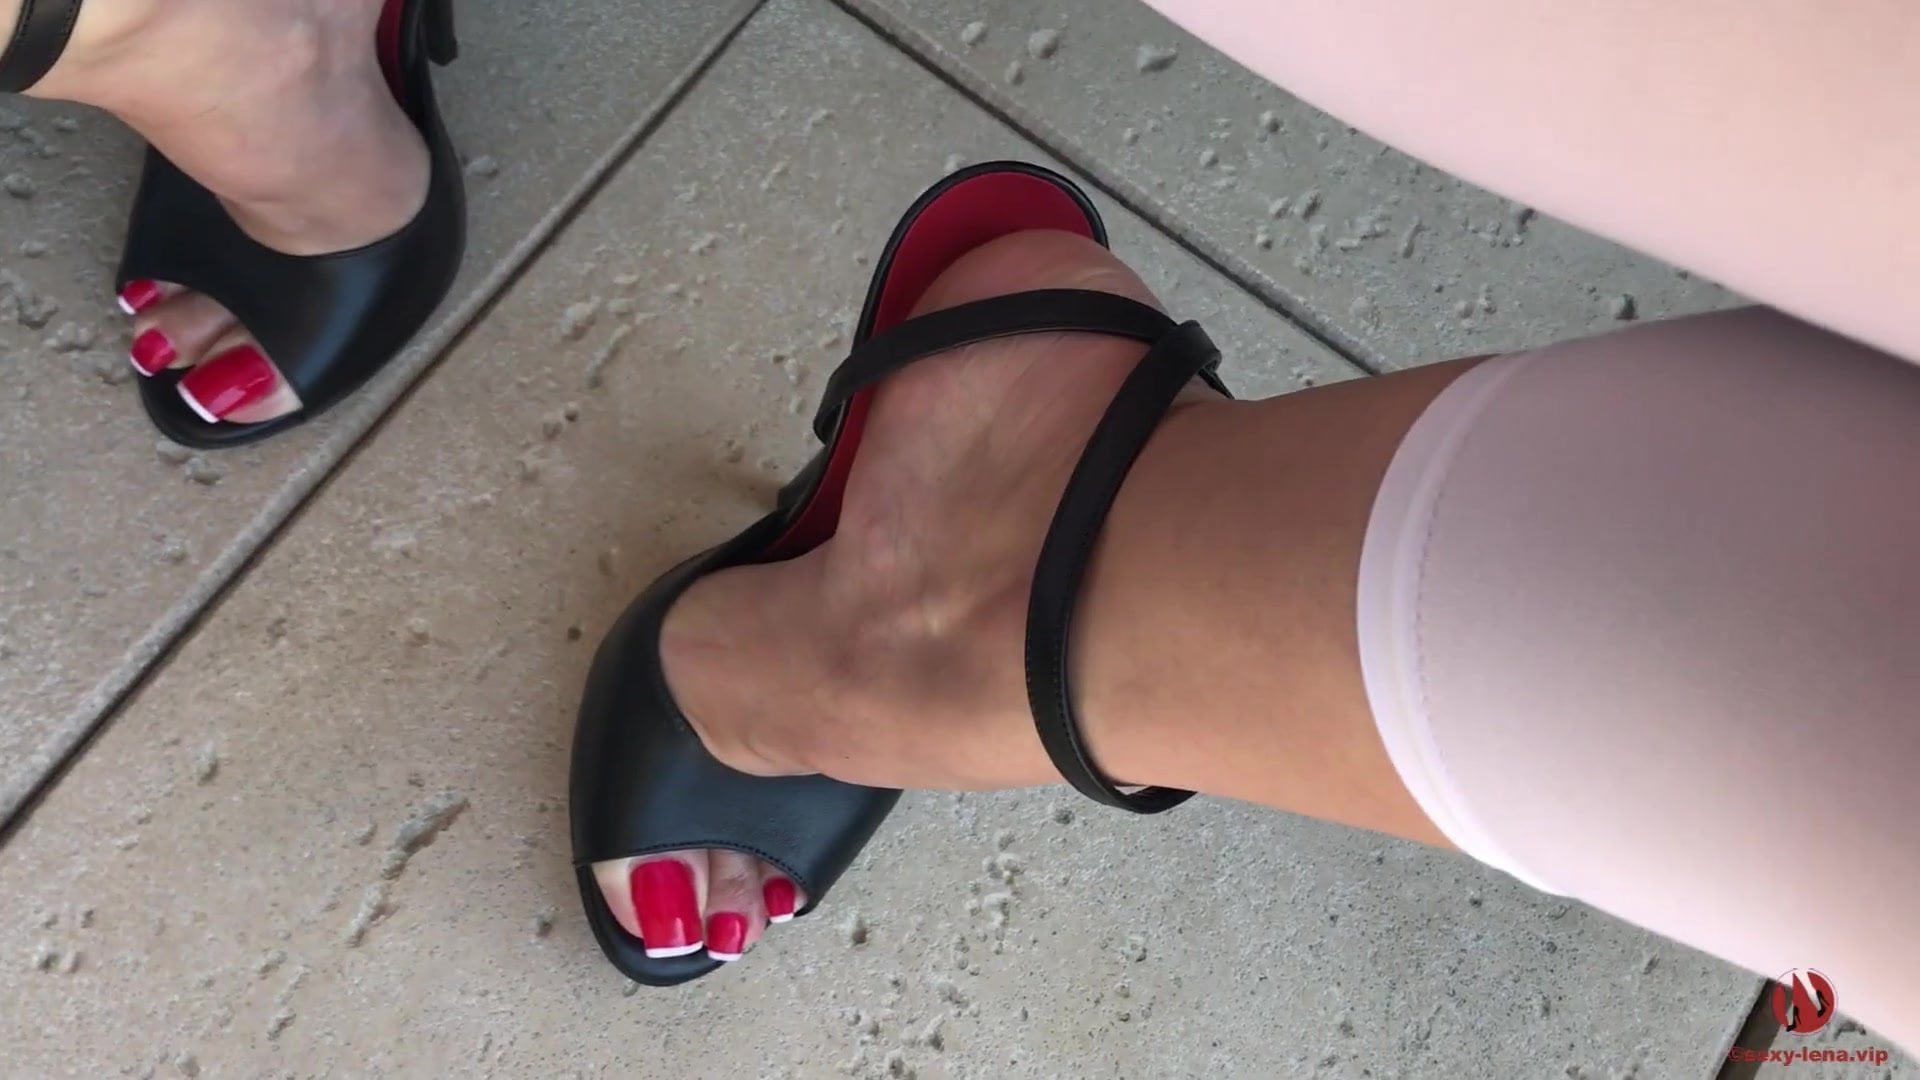 Hot Feet In Heels Porn - Sexy feet in high heels XXX - Sexy feet in high heels Porn Videos |  Redvidz.com